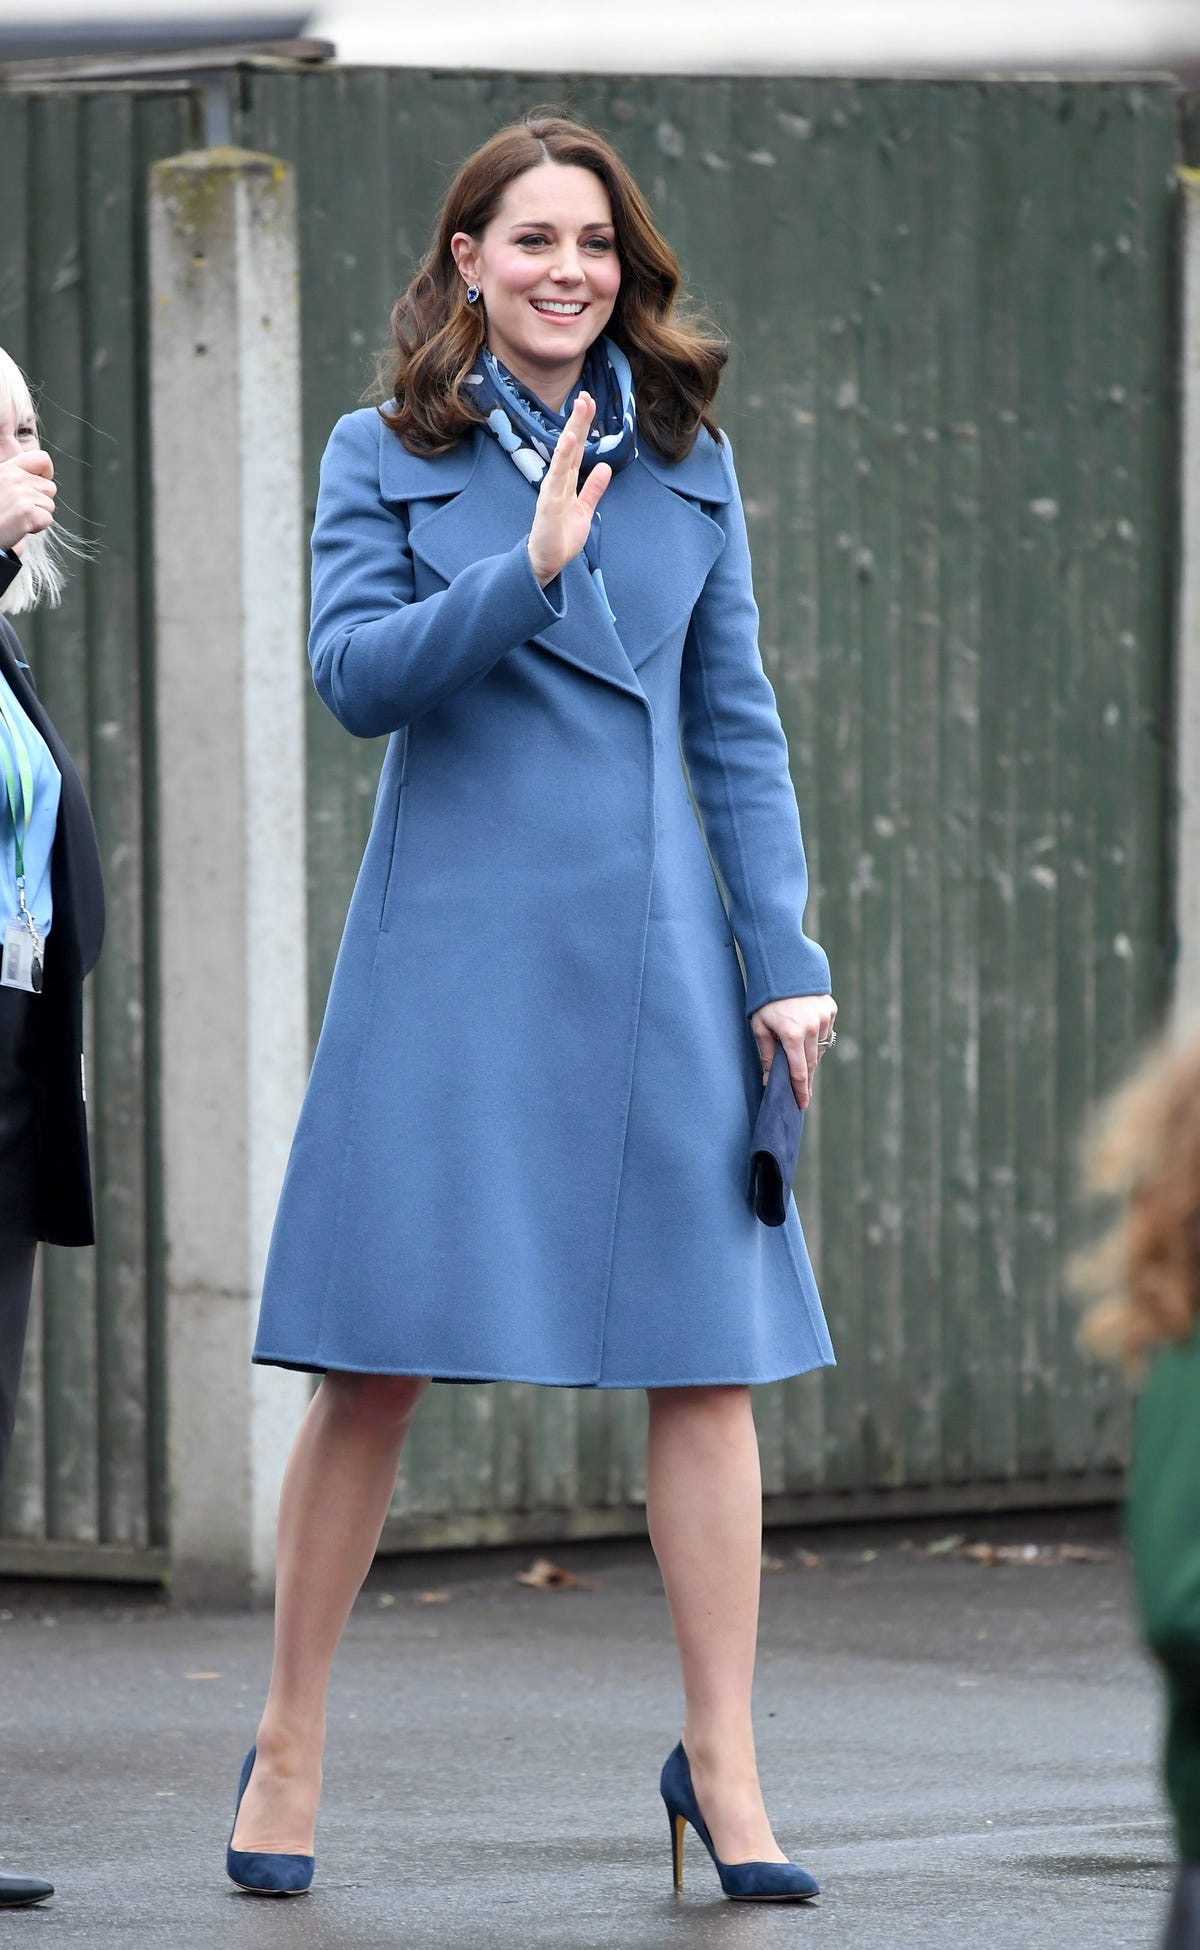 Chiếc áo khoác xanh đến từ thương hiệu Sportmax được công nương Kate diện cùng khăn chàng hoạ tiết. Giày và túi xách được đặt riêng với chất liệu nhung cao cấp và màu sắc tương đồng. Mẫu áo có giá 2,490 USD (khoảng 58 triệu đồng).